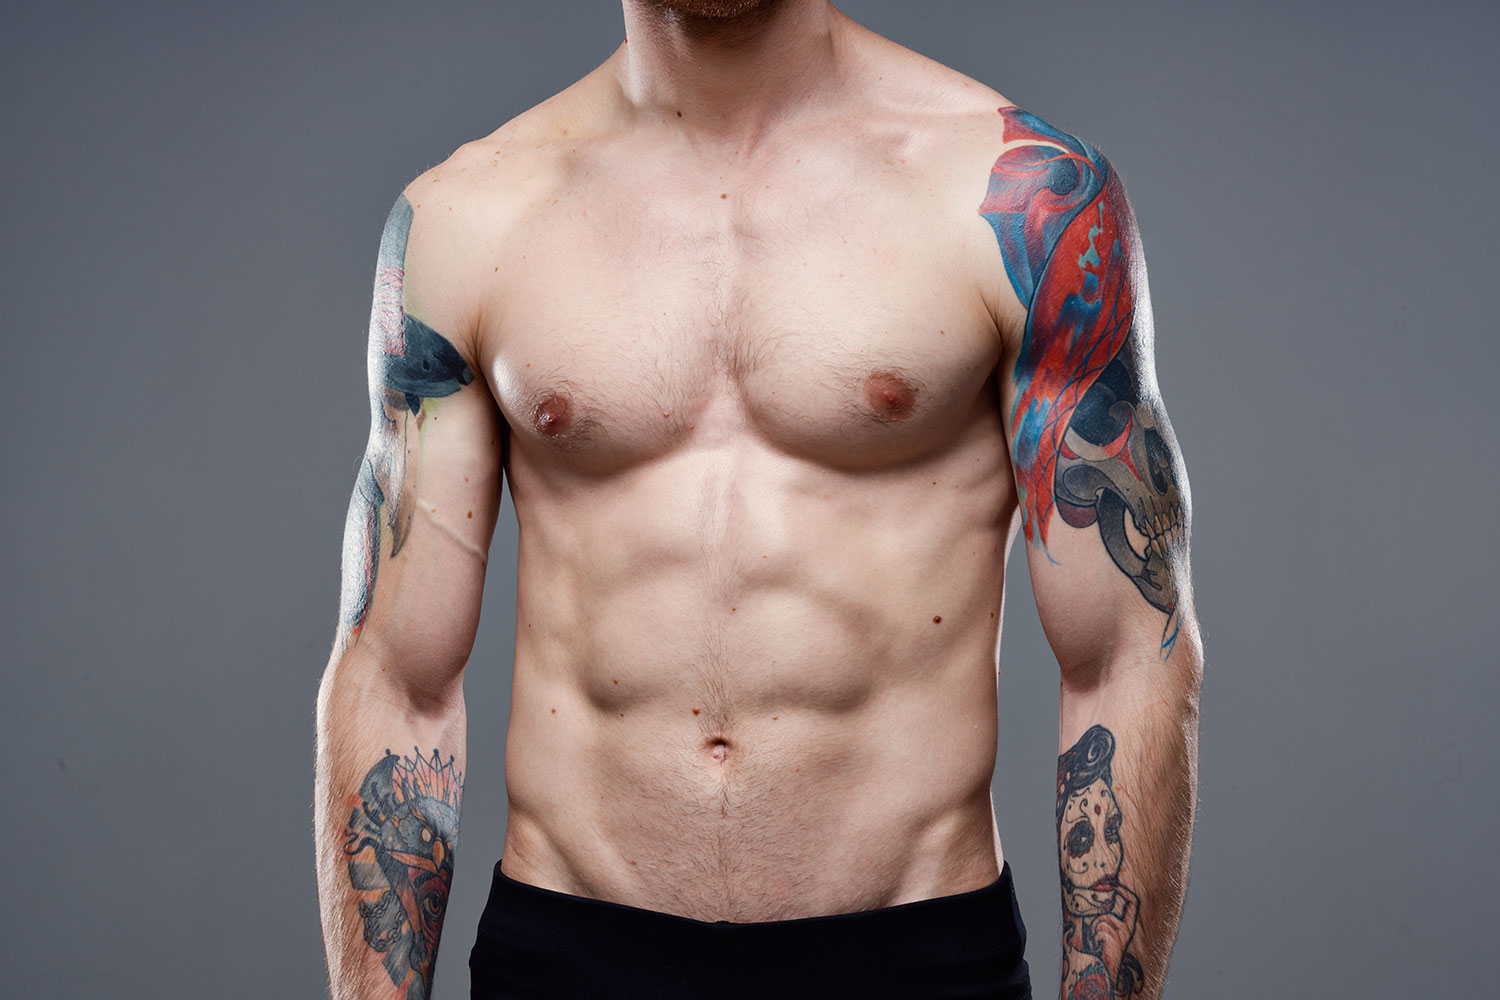 Forearm tattoos for men